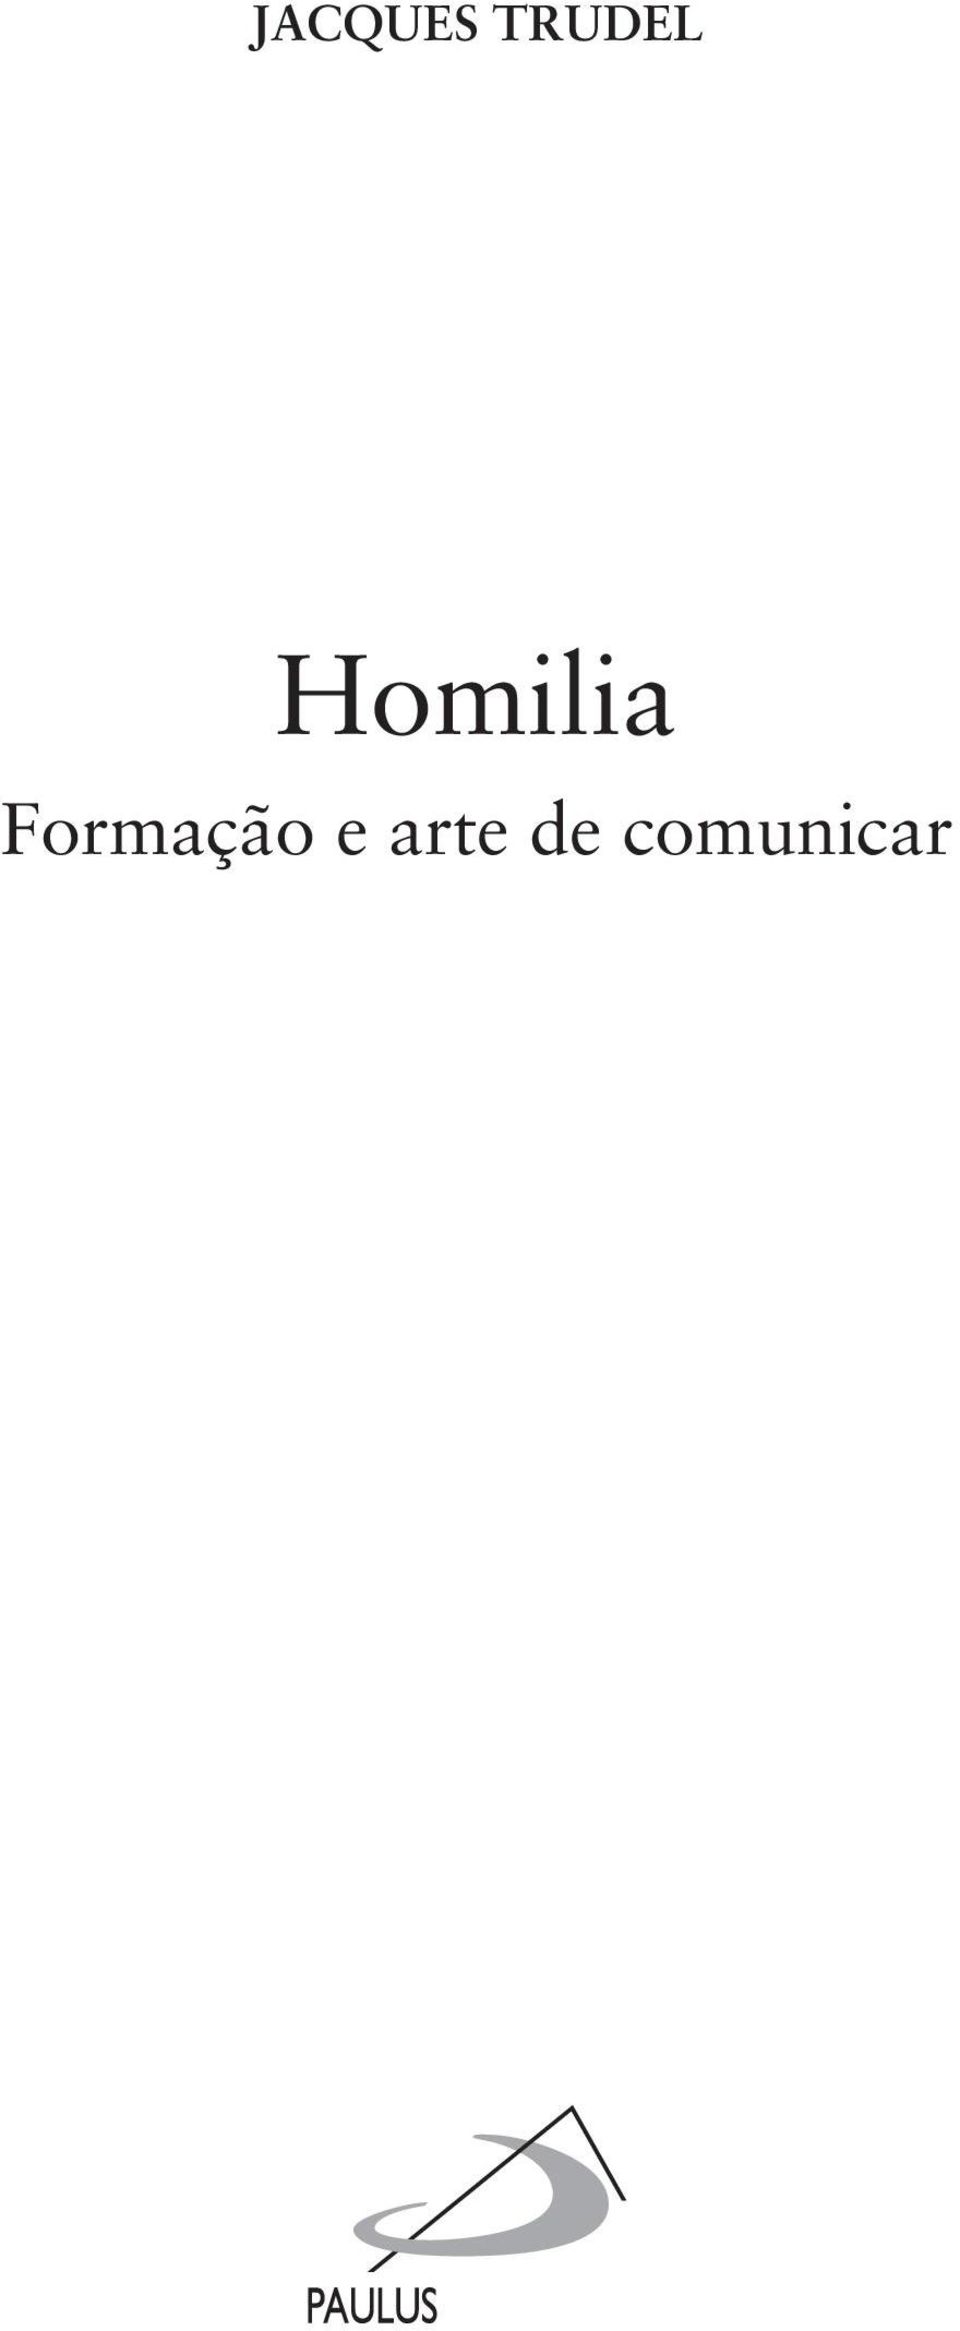 Homilia